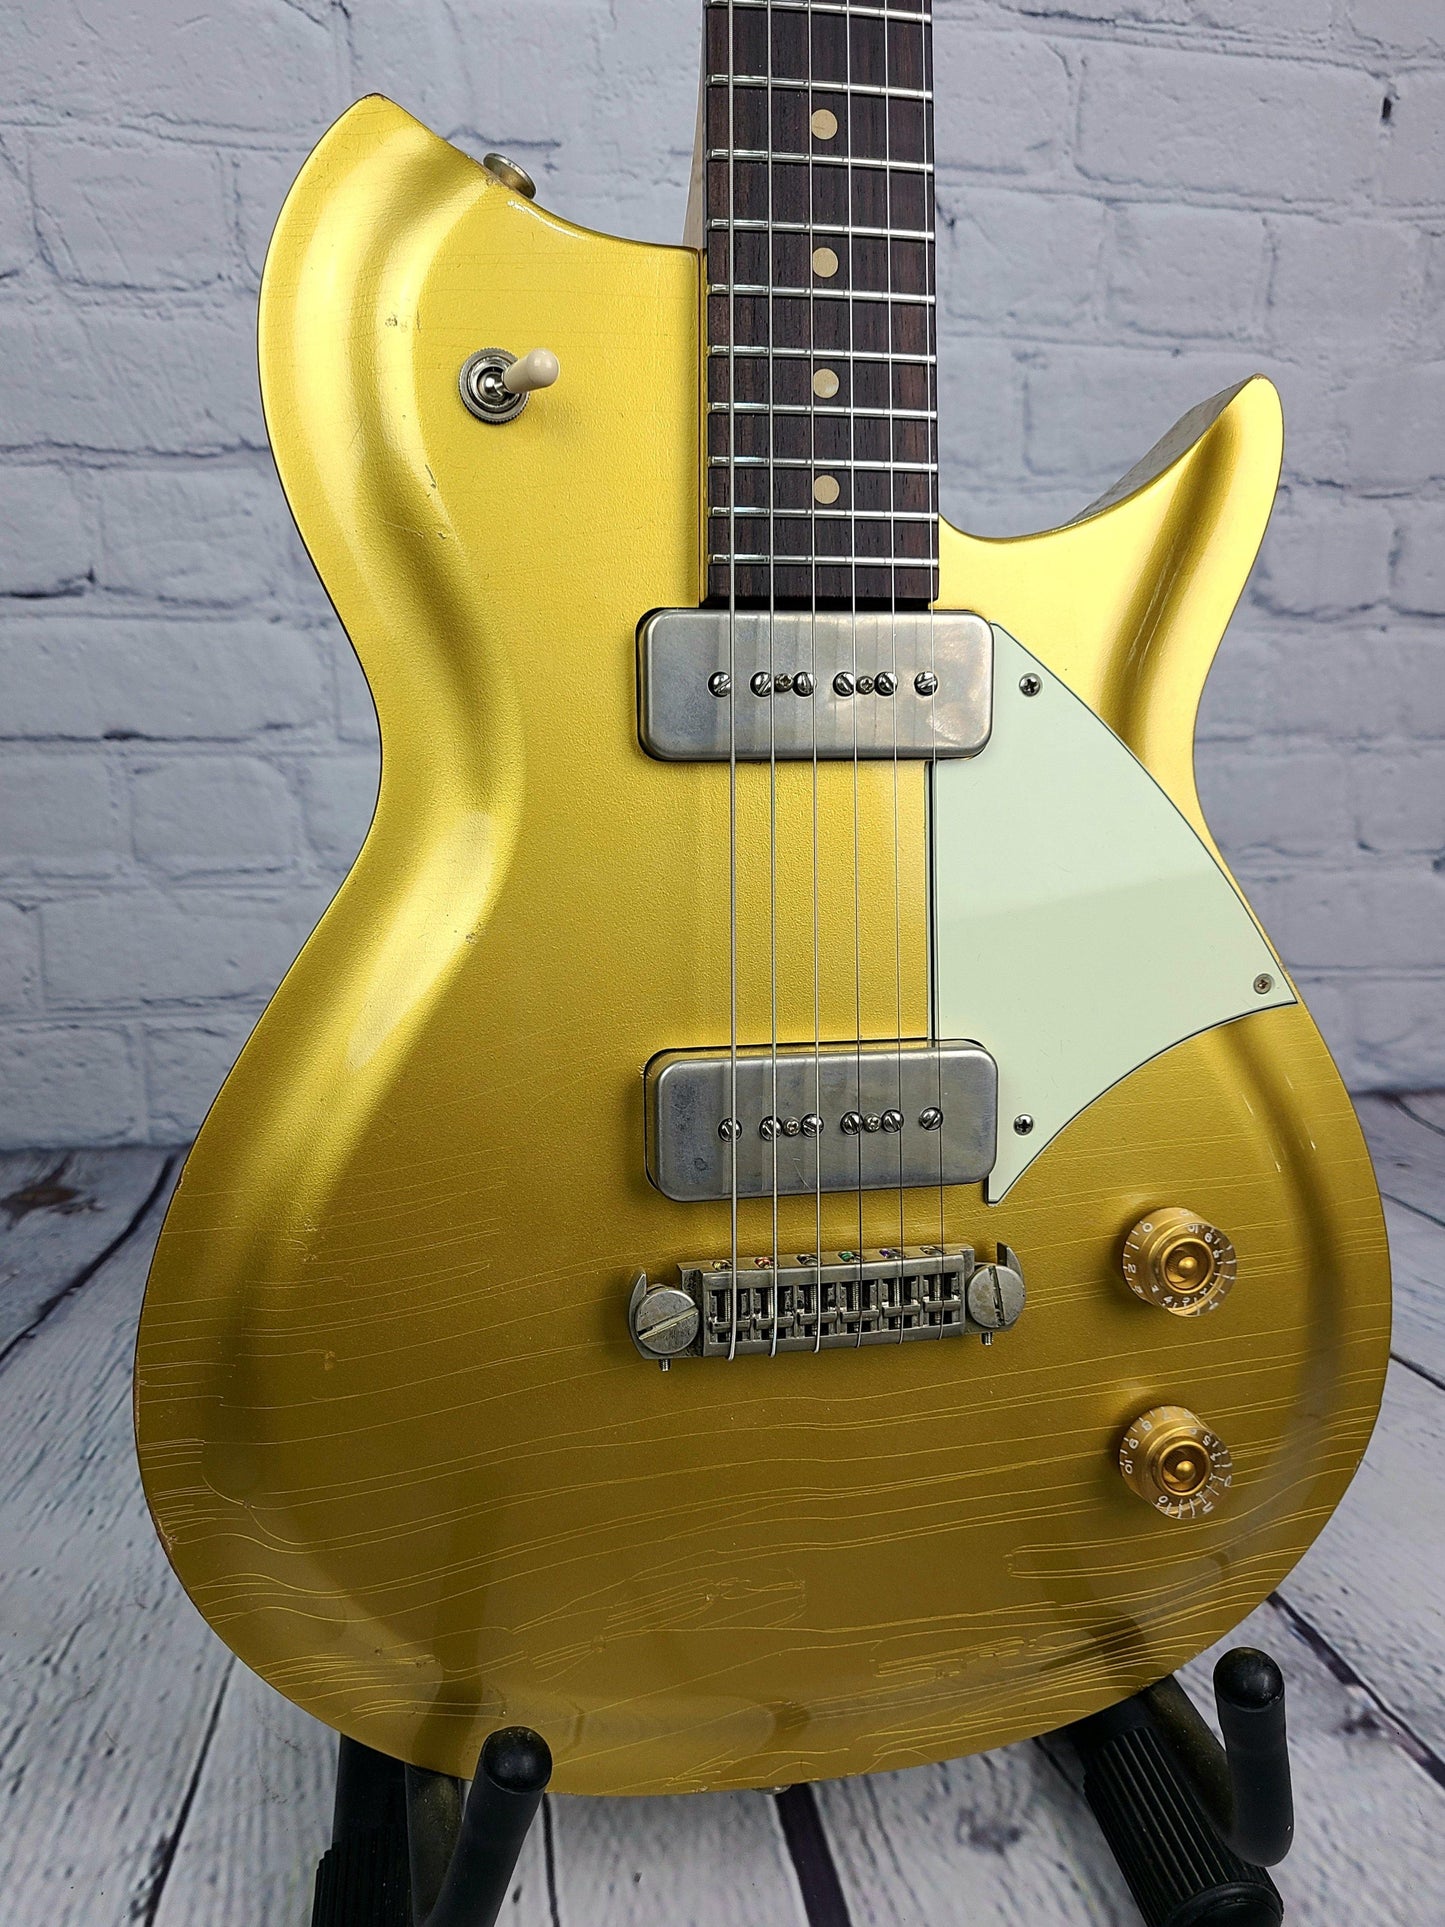 Fano RB6 Oltre Light Distress Relic P90s Made in USA - Guitar Brando